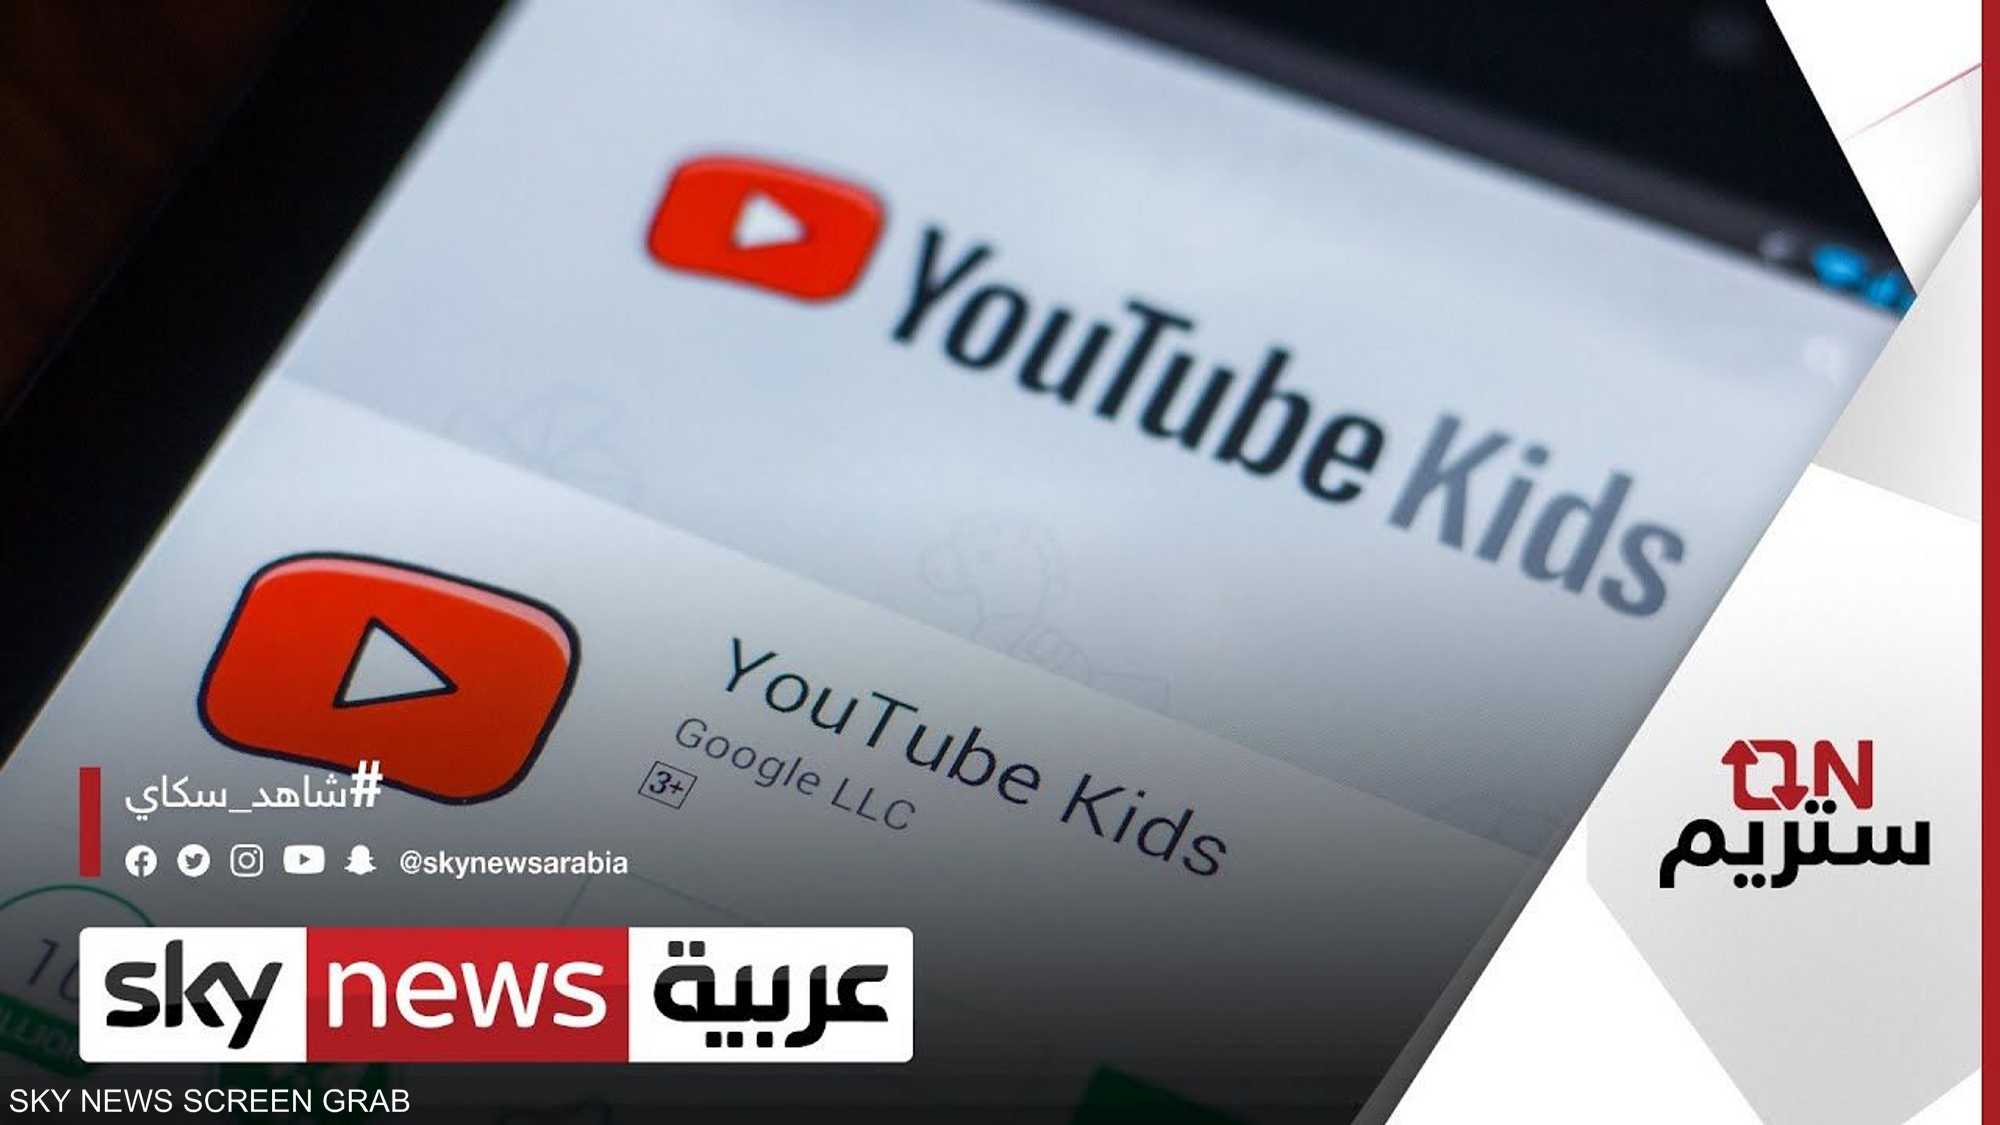 أطفالك في يد أمينة.. غوغل تطلق تطبيق "يوتيوب كيدز" بالعربية